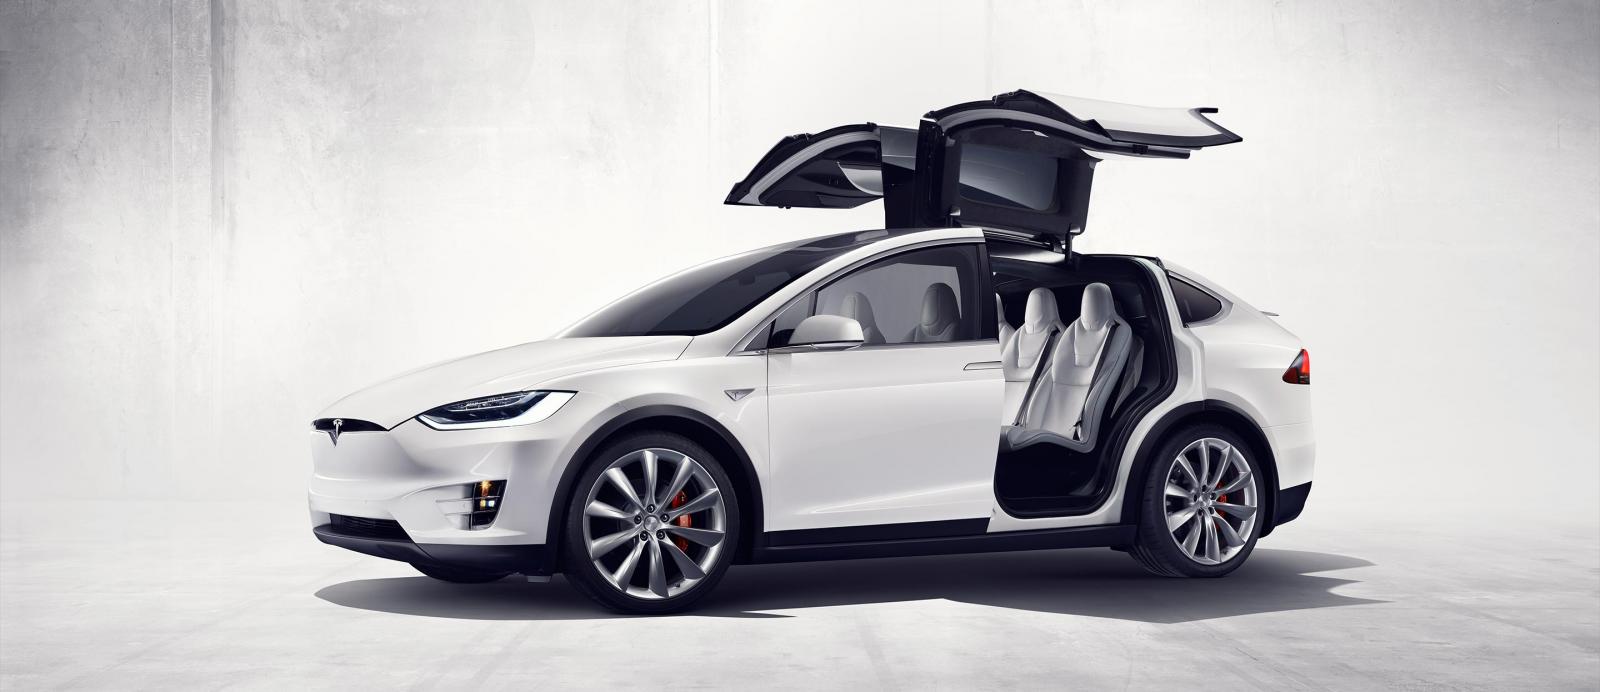 Descubre qué se siente al conducir un Tesla Model X en este vídeo del Festival de Goodwood